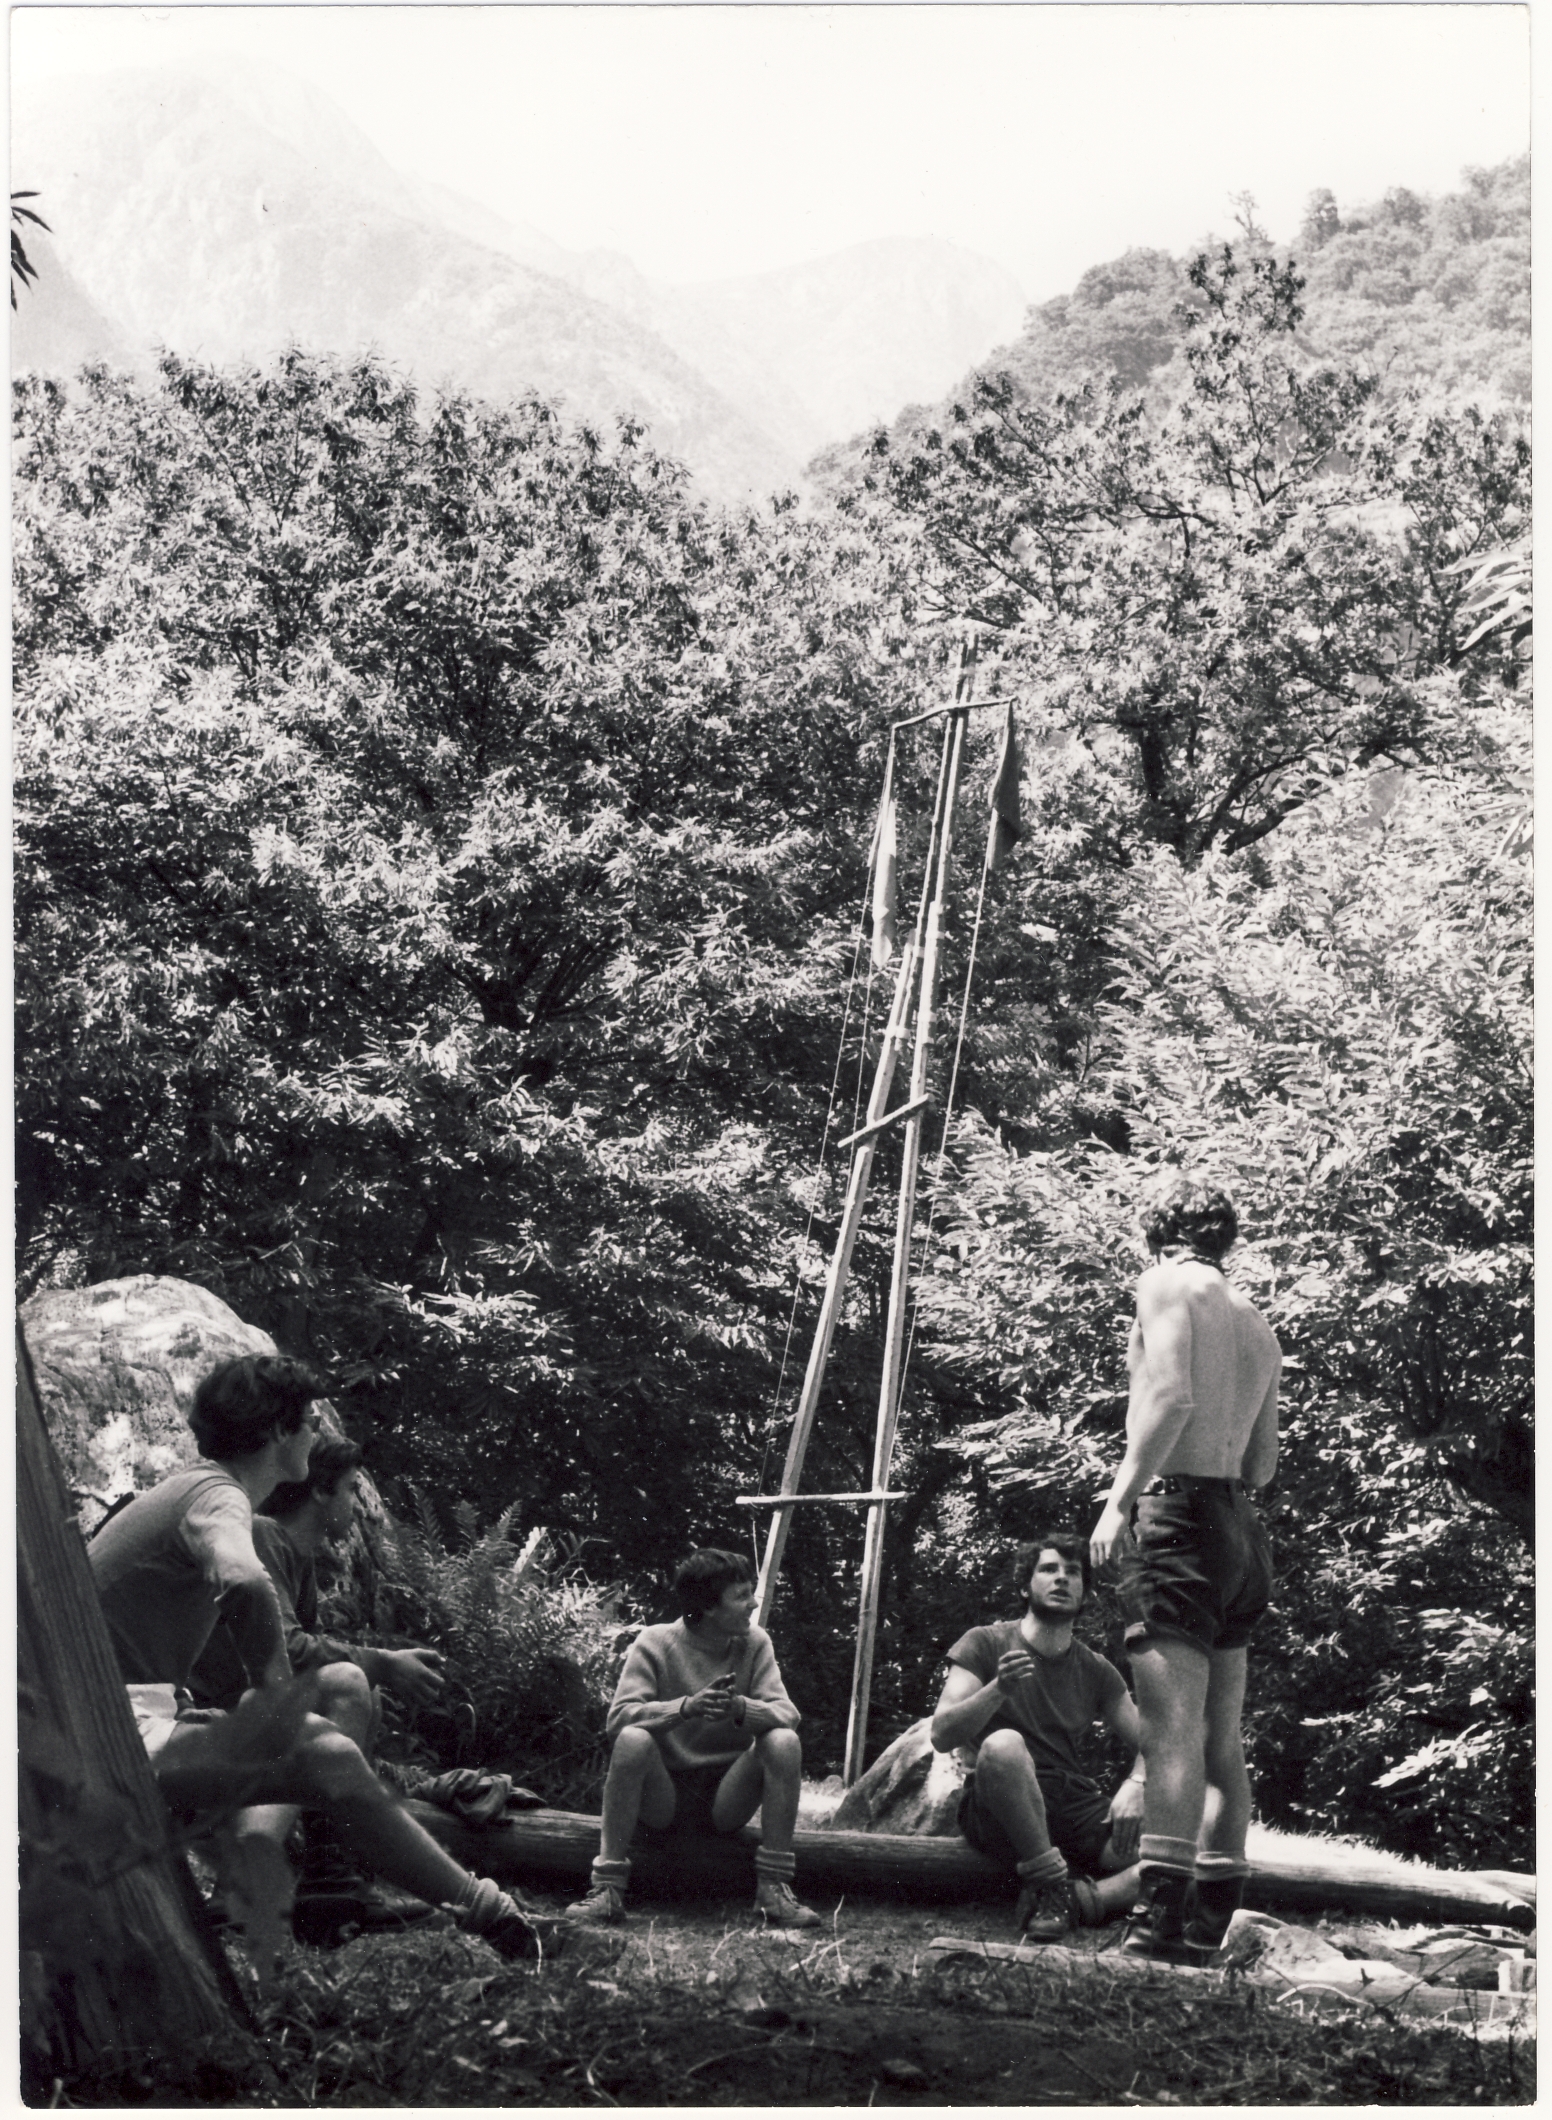 19 luglio 1970: Campo Estivo del Riparto Como 3 a Dangri nella Valle Del Liro, sulla strada per il lago Darengo. Il caporiparto in piedi arringa l'alta squadriglia seduta. Da sinistra a destra: Sergio Volani, Elio Musso, Cesare Ceriani, Lucio Turconi, Ettore Bustaffa